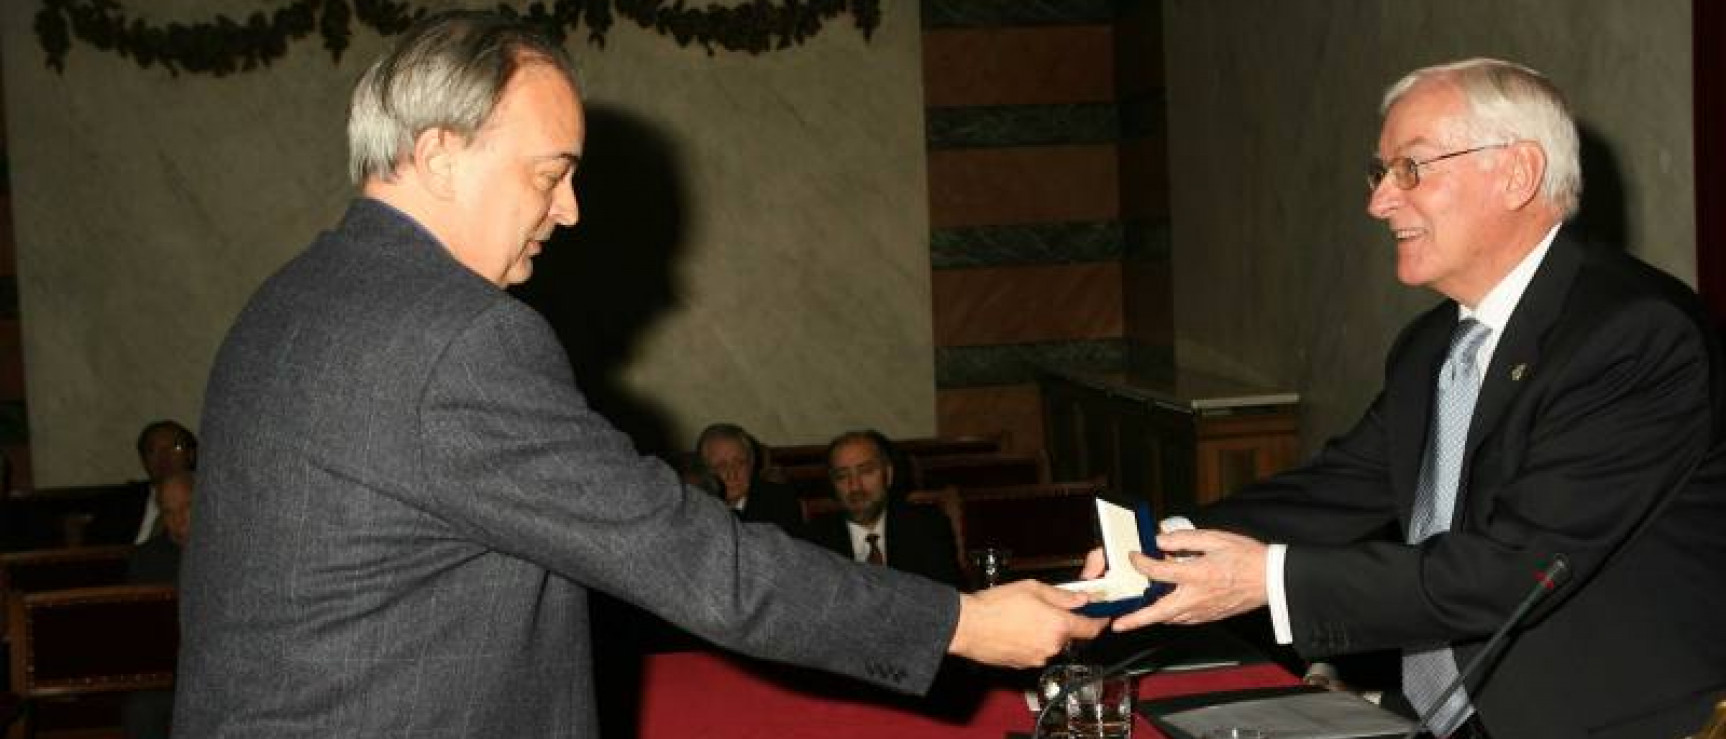 Enrique Vila-Matas recibe el Premio Real Academia Española el Día de la Fundación, 2007.